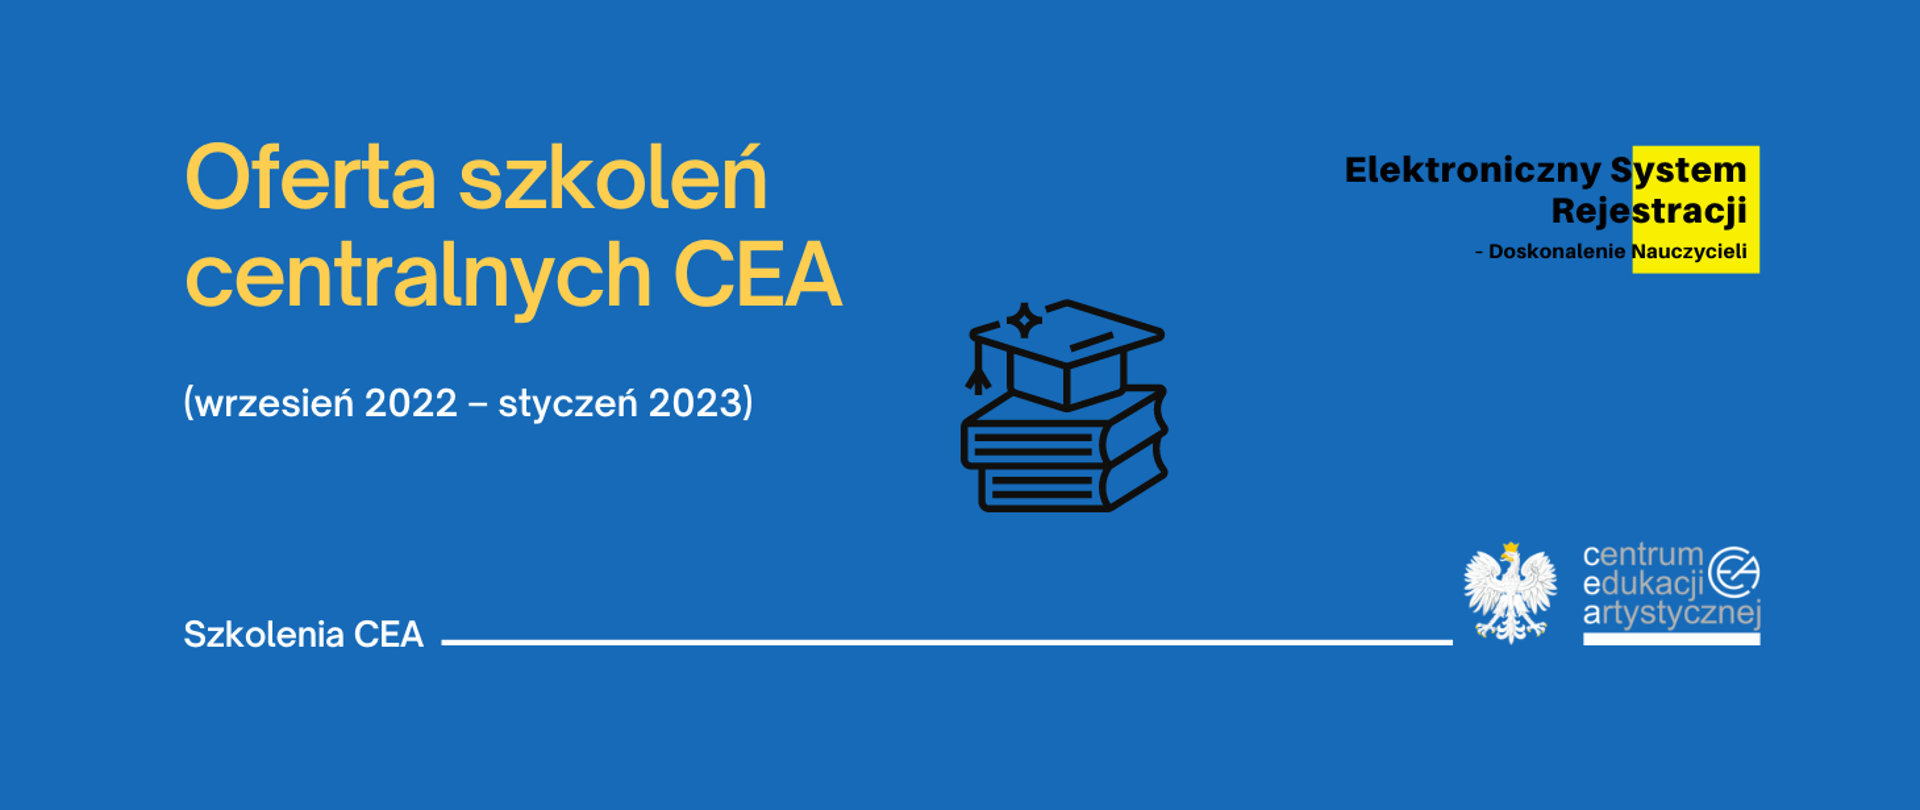 Niebieska grafika z logo CEA w prawym dolnym rogu, logo elektronicznego systemu rejestracji nauczycieli w prawym górnym rogu i tekstem "Oferta szkoleń centralnych CEA (wrzesień 2022 – styczeń 2023)"